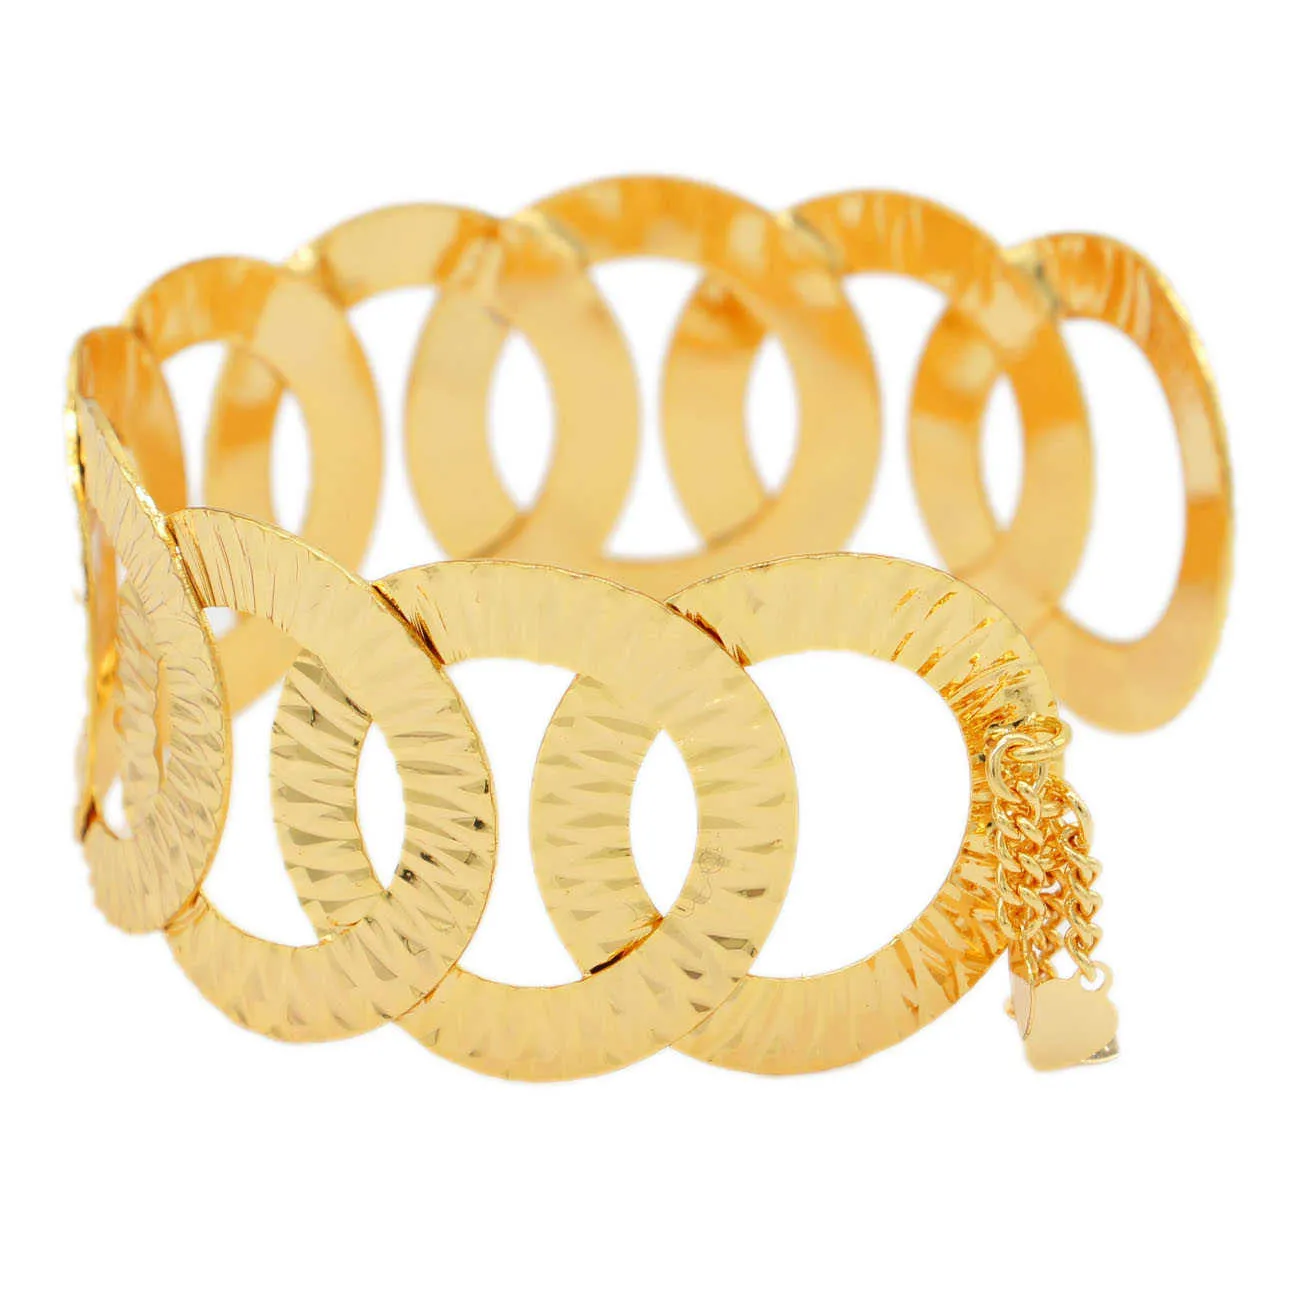 여성을위한 Pinxun New Cuff Bracelet 골드 컬러 웨딩 보석 아프리카 중동 아랍 두바이 Bangles 엄마 선물 Q0720